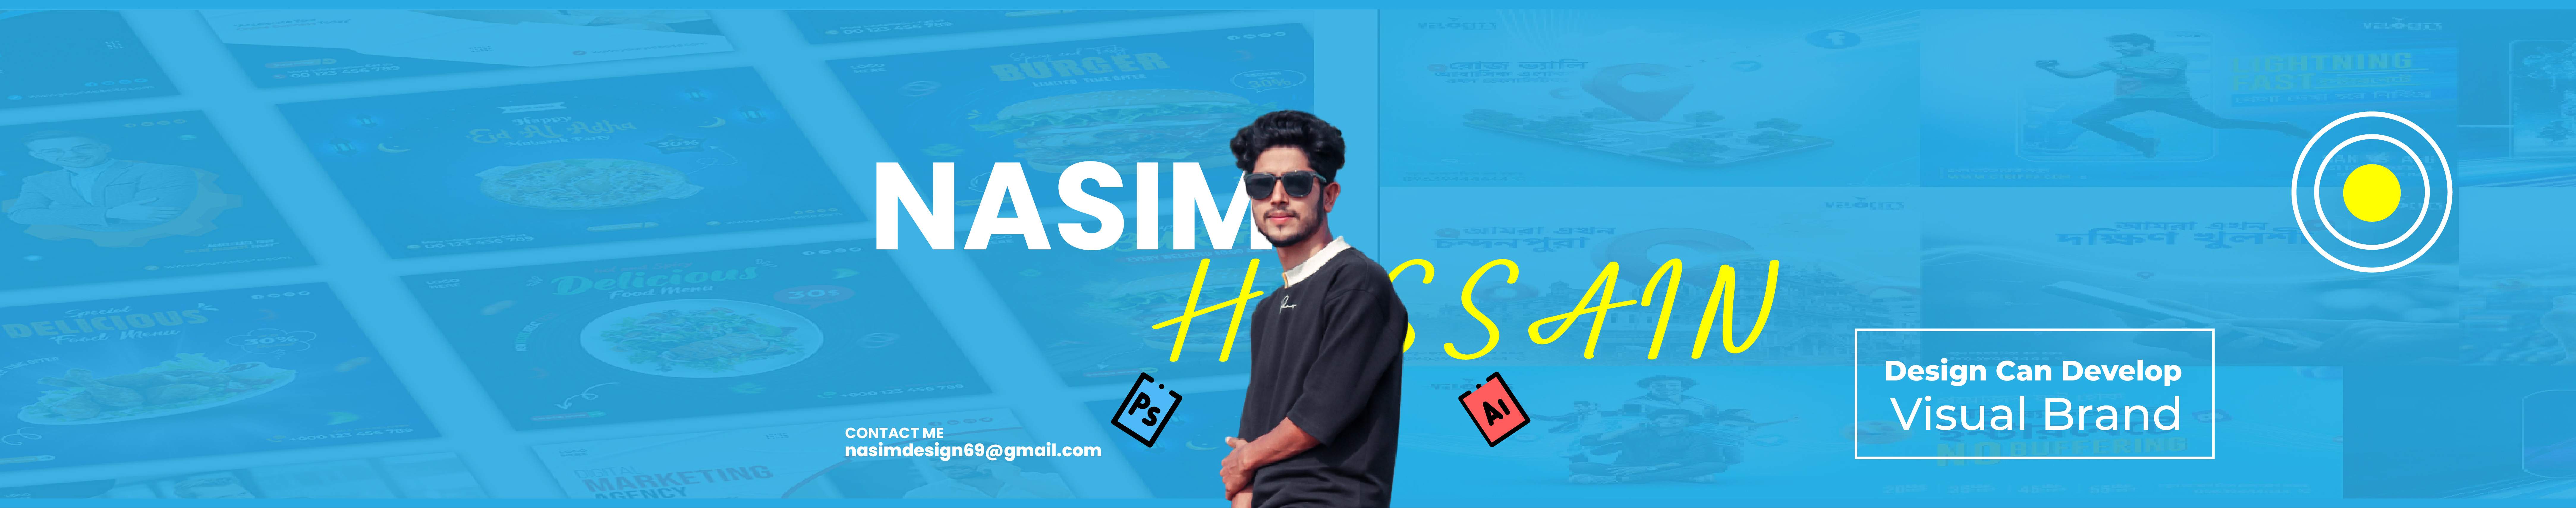 Banner de perfil de Nasim Hossain